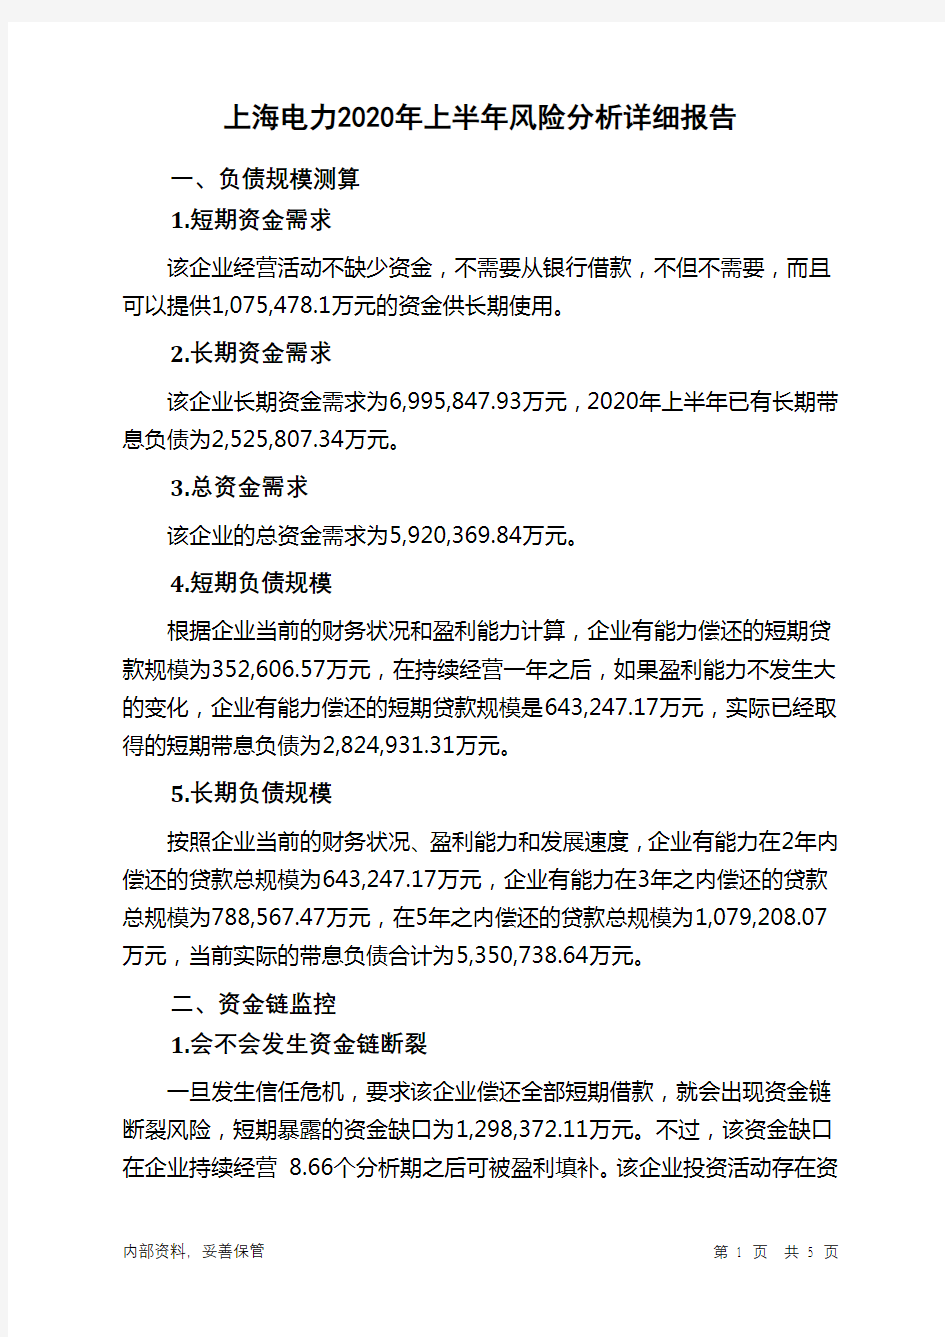 上海电力2020年上半年财务风险分析详细报告